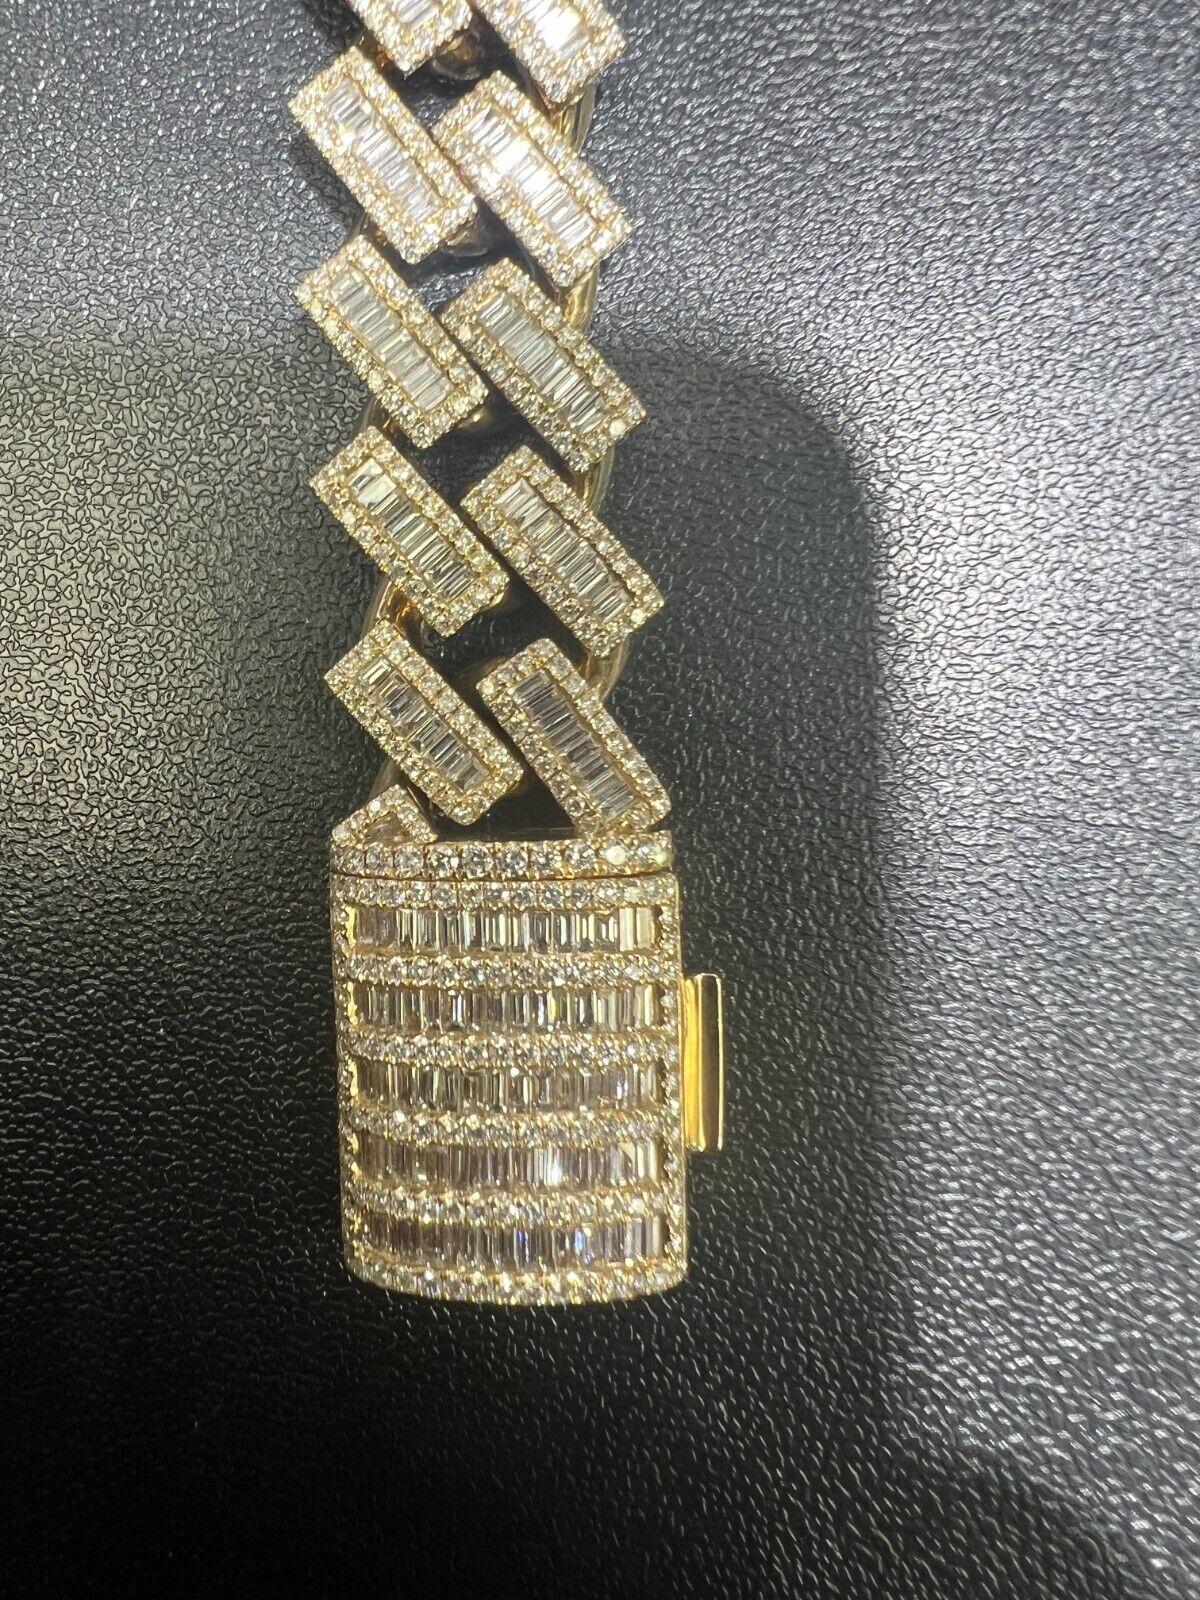 Cubin Link Diamond Emerald Cut 16mm Bracelet